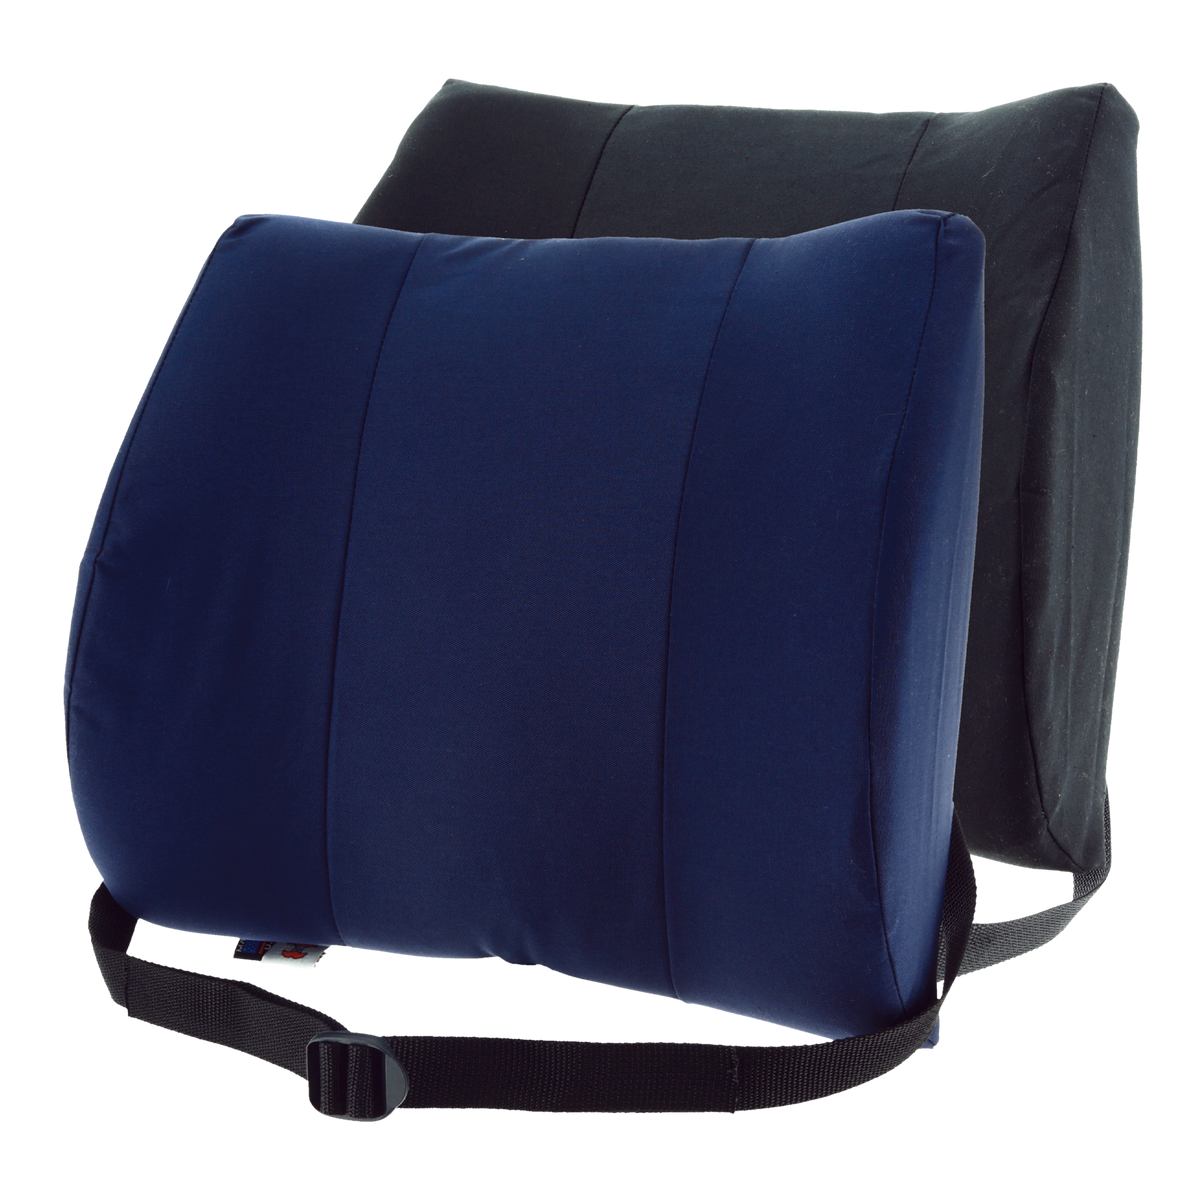 Wheelchair Back And Lumbar Cushion Set